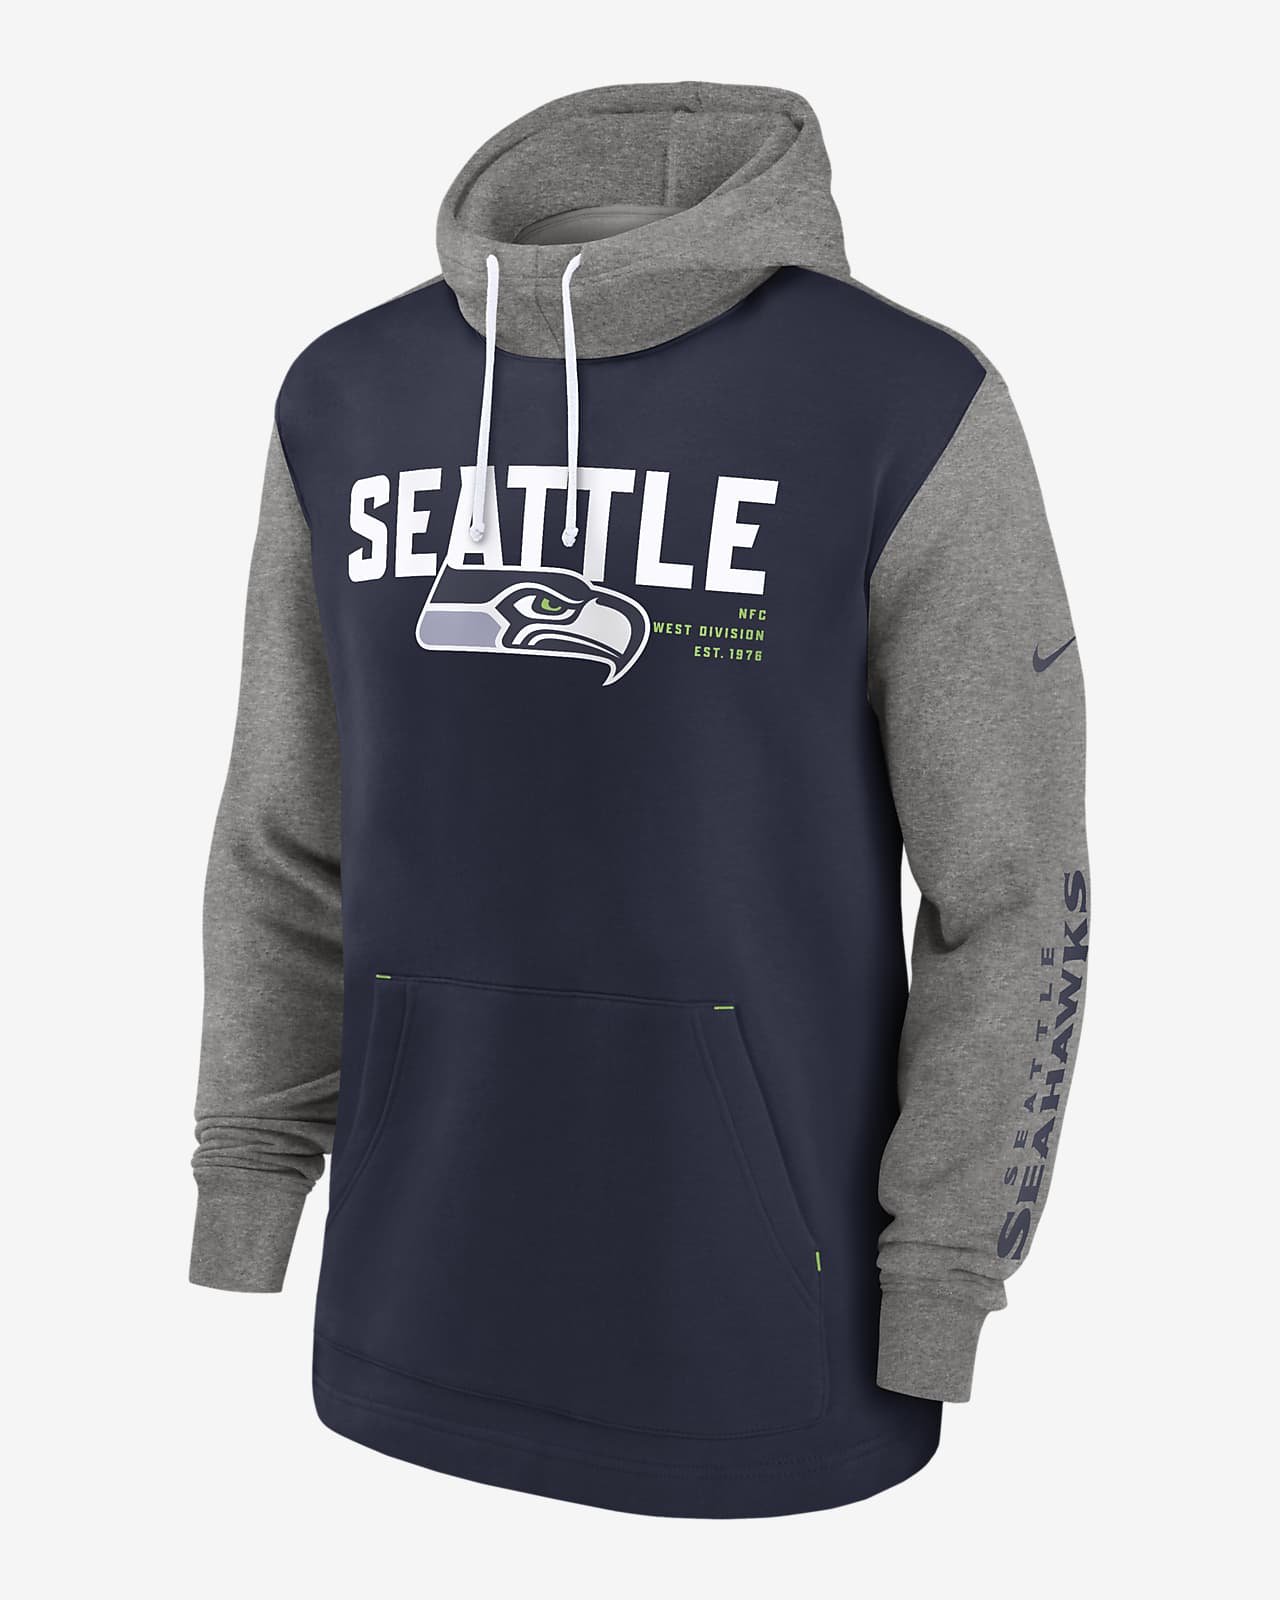 Seattle Seahawks Color Block Men's Nike NFL Pullover Hoodie.